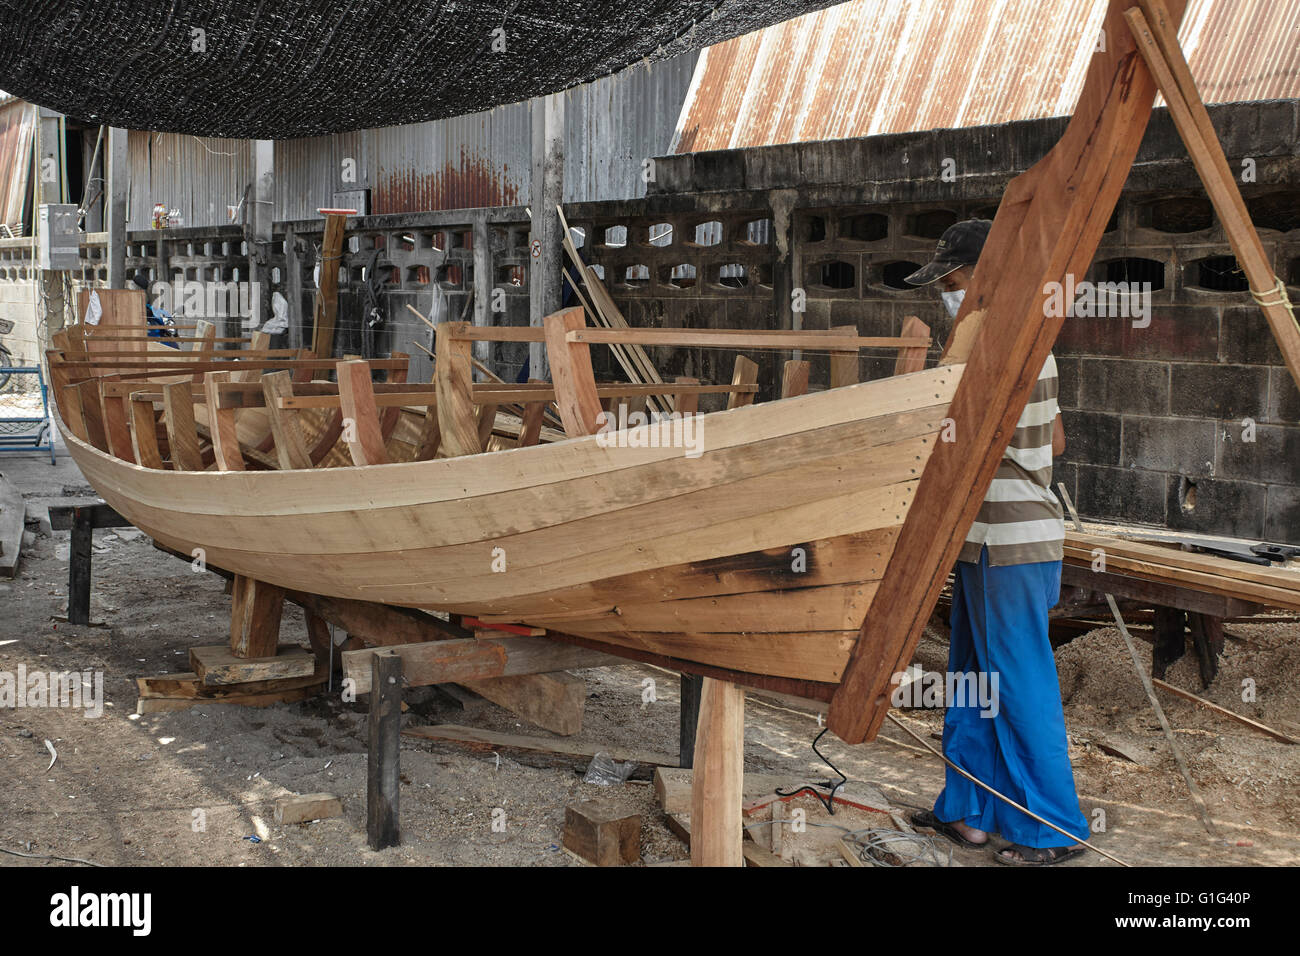 Thailändischer Bootsbauer. Handwerker bauen ein traditionelles Holzboot. Thailand S. E. Asien Stockfoto